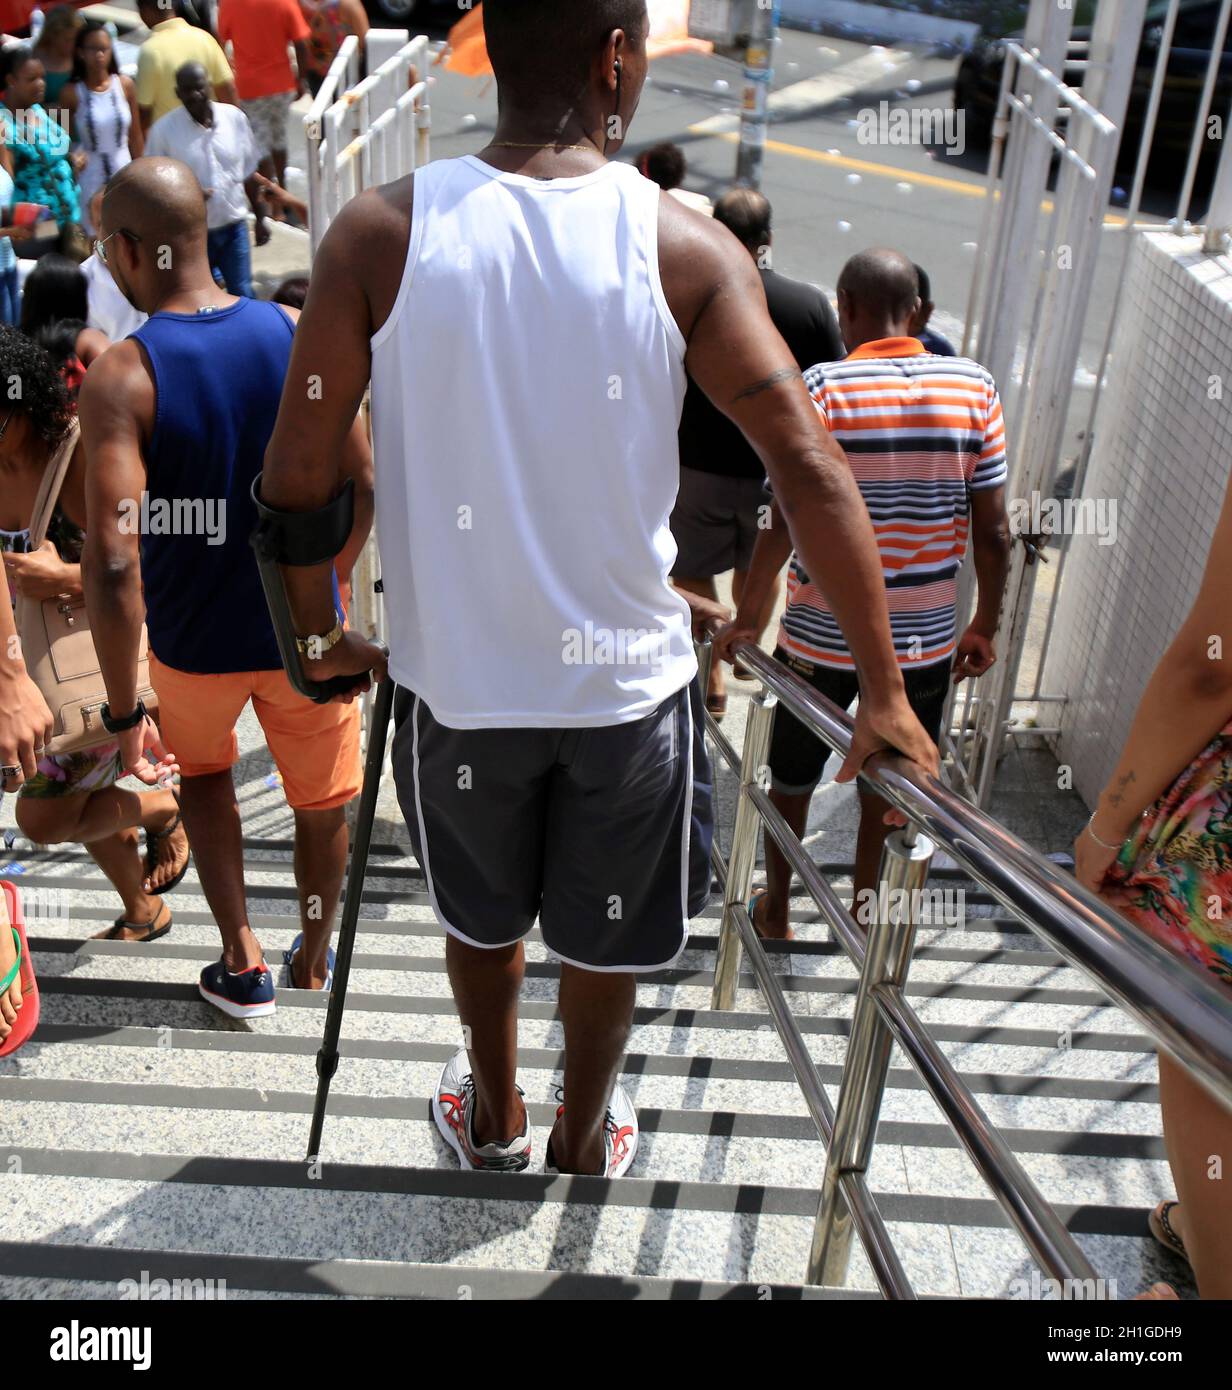 salvador, bahia / brésil - 4 septembre 2017: Les gens utilisant un mulete est vu pendant la descente des escaliers dans la ville de Salvador.*** Légende locale *** Banque D'Images